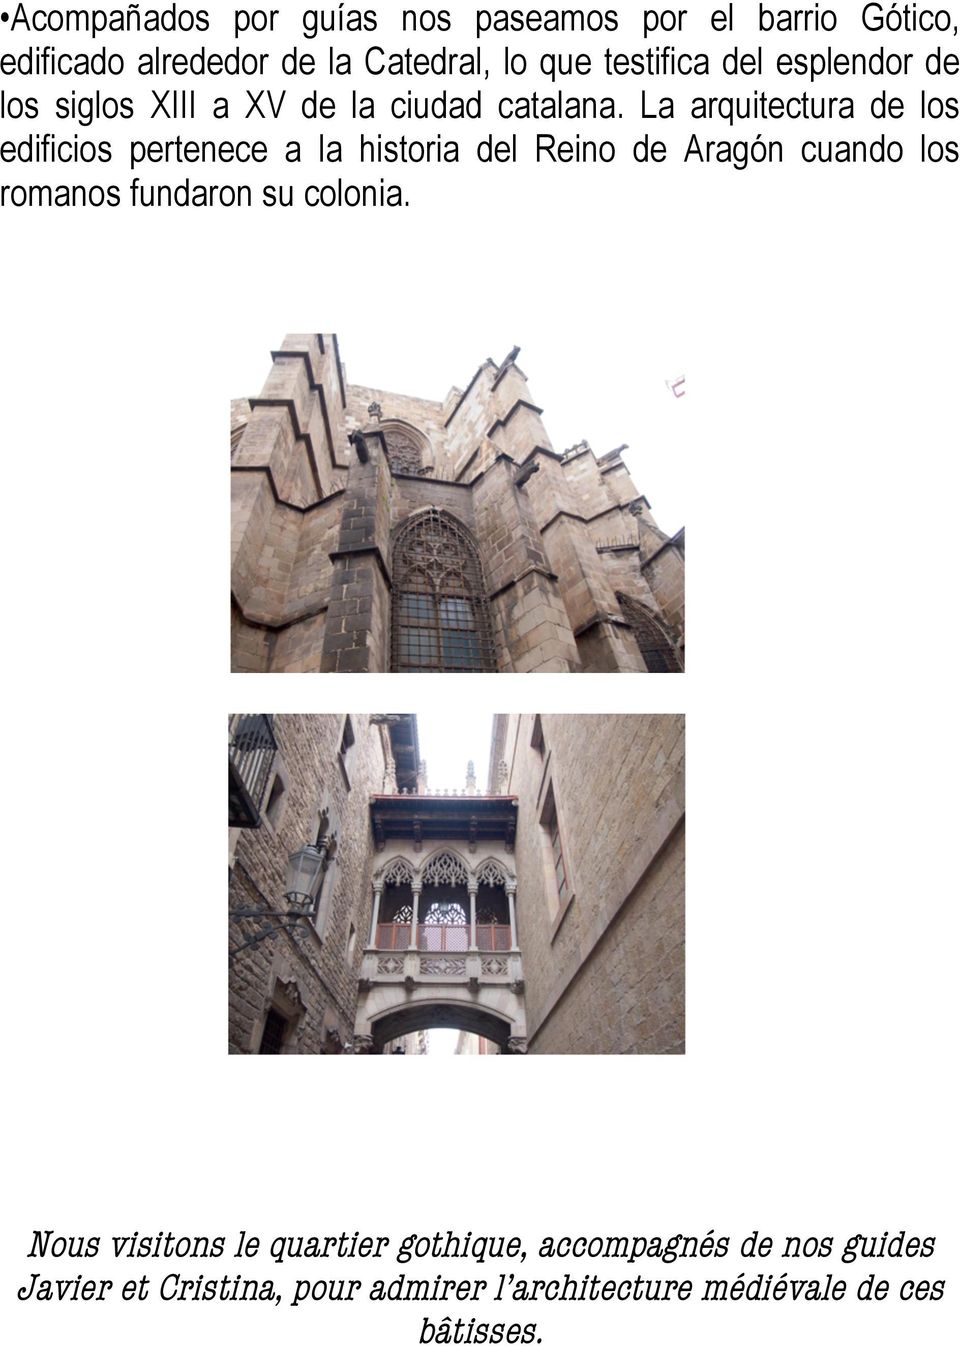 La arquitectura de los edificios pertenece a la historia del Reino de Aragón cuando los romanos fundaron